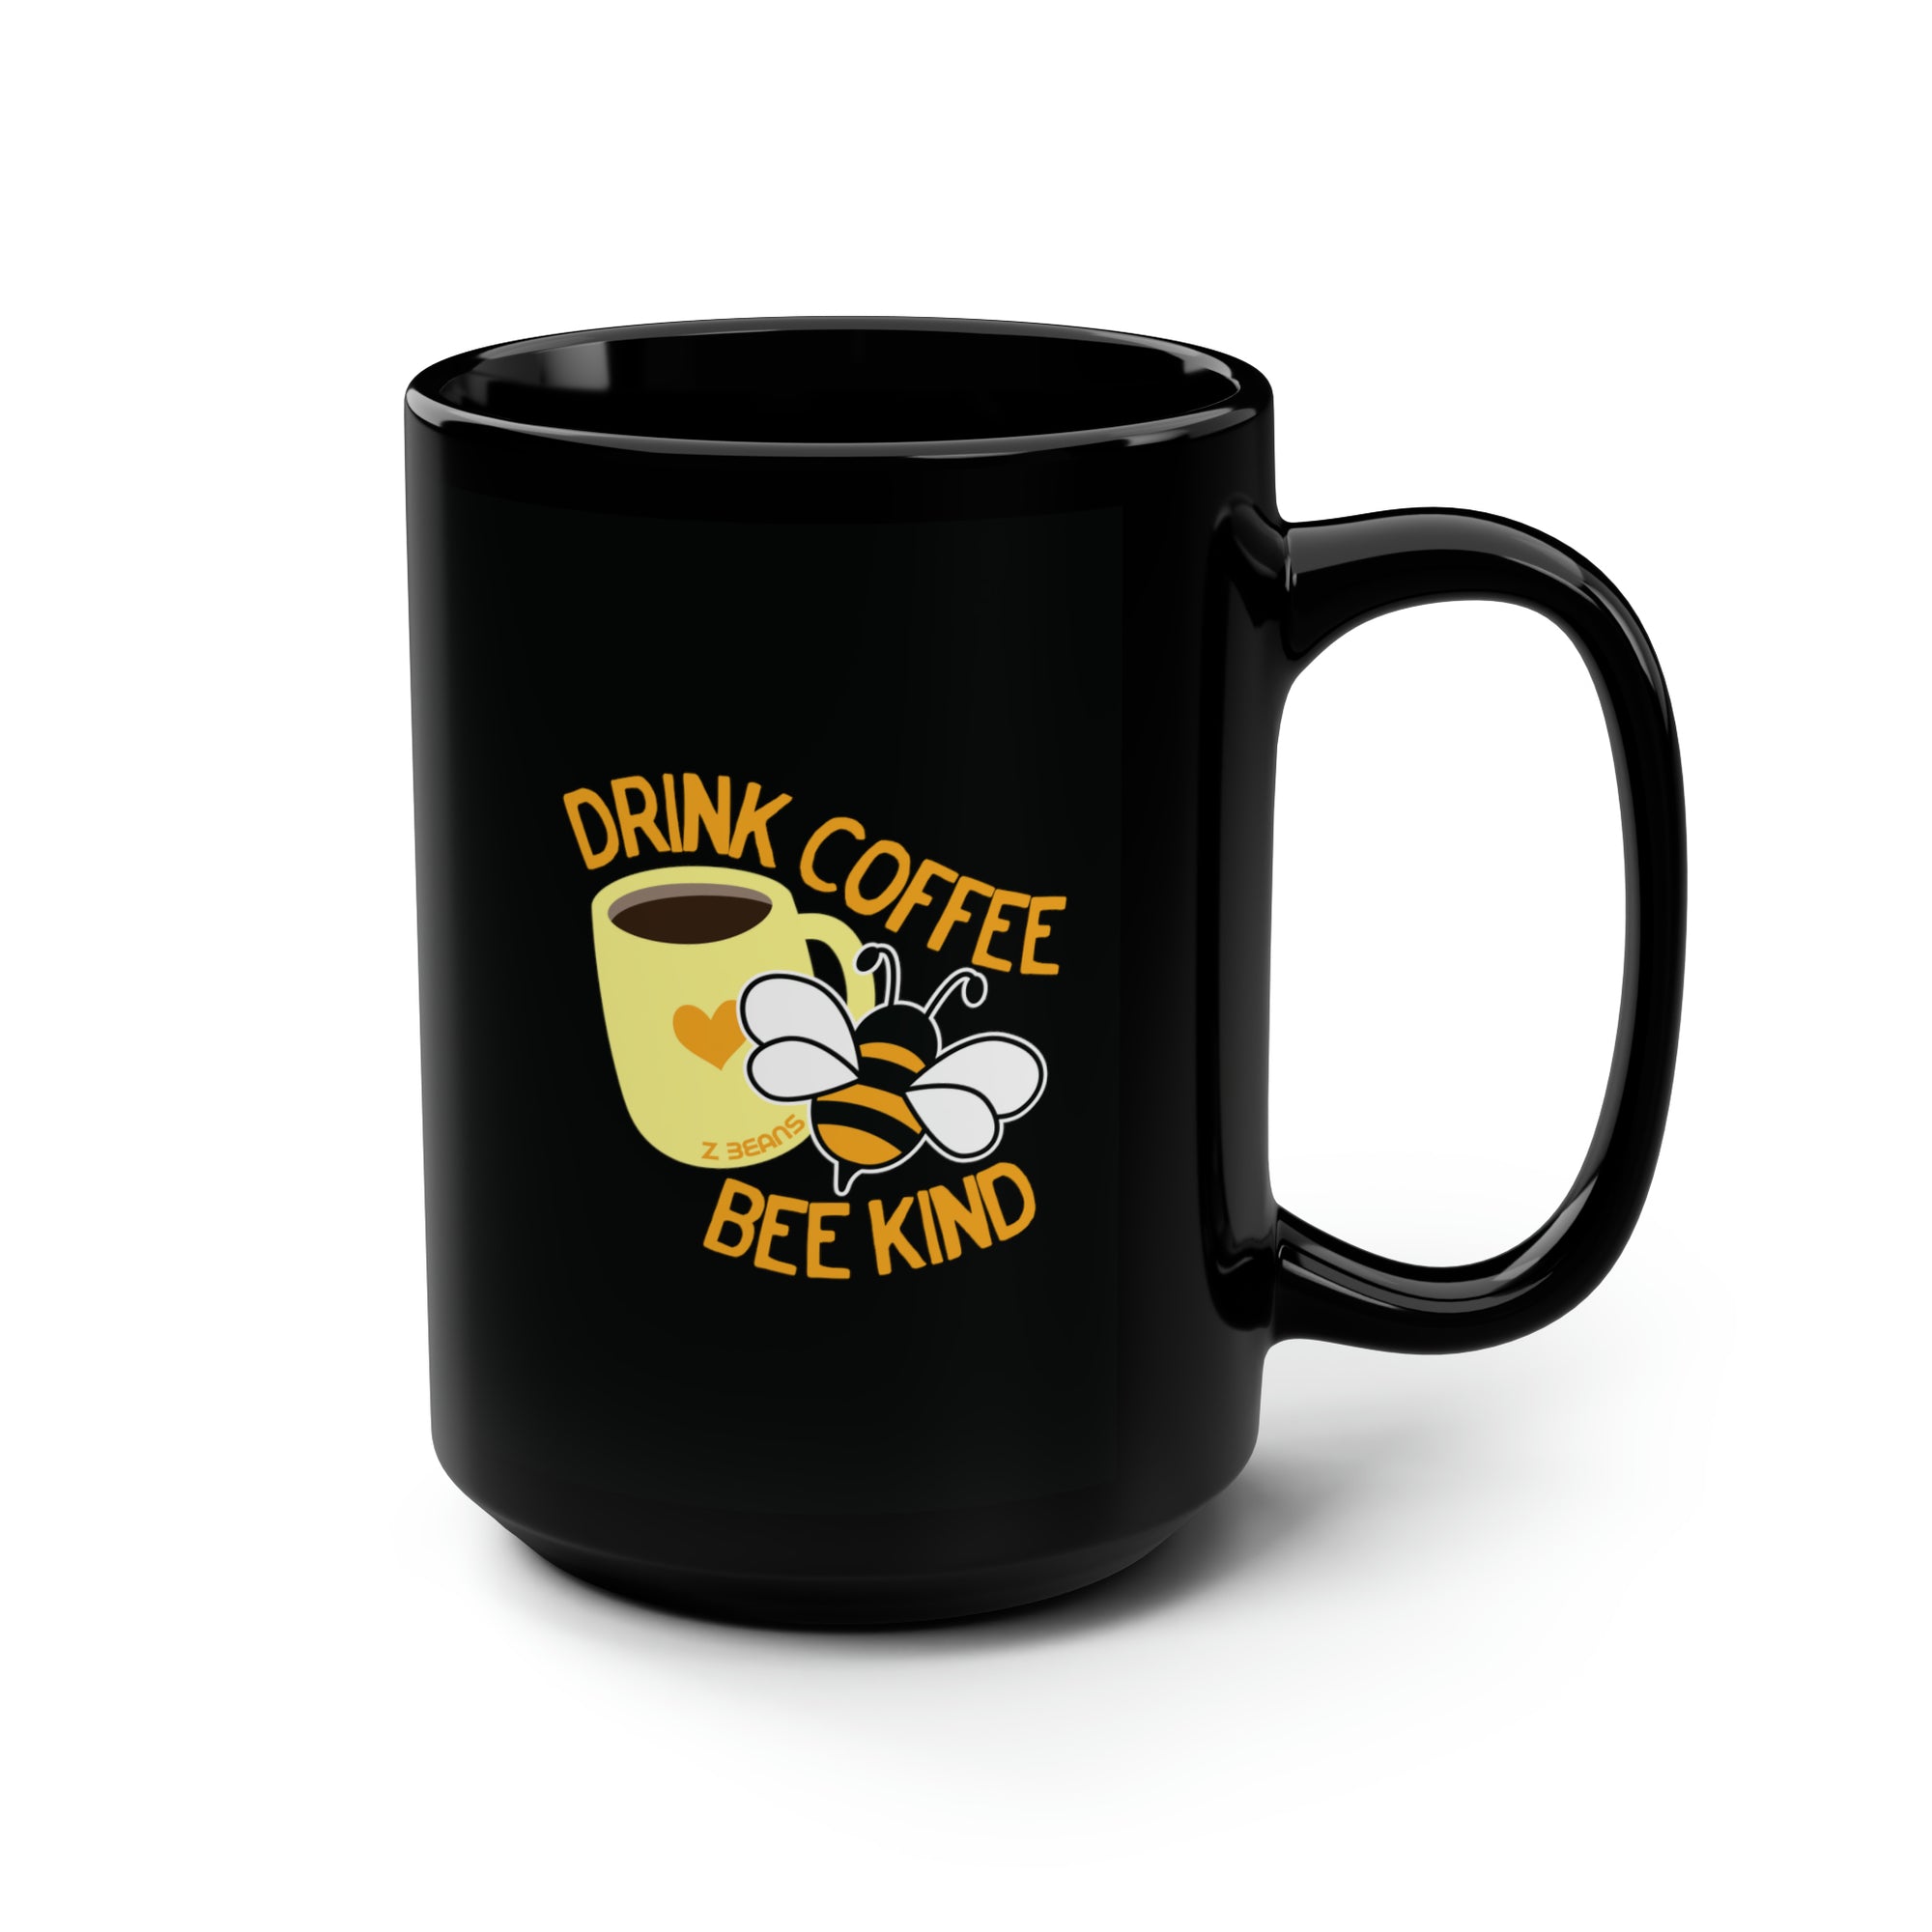 Drink Coffee, Bee Kind - 15oz Mug